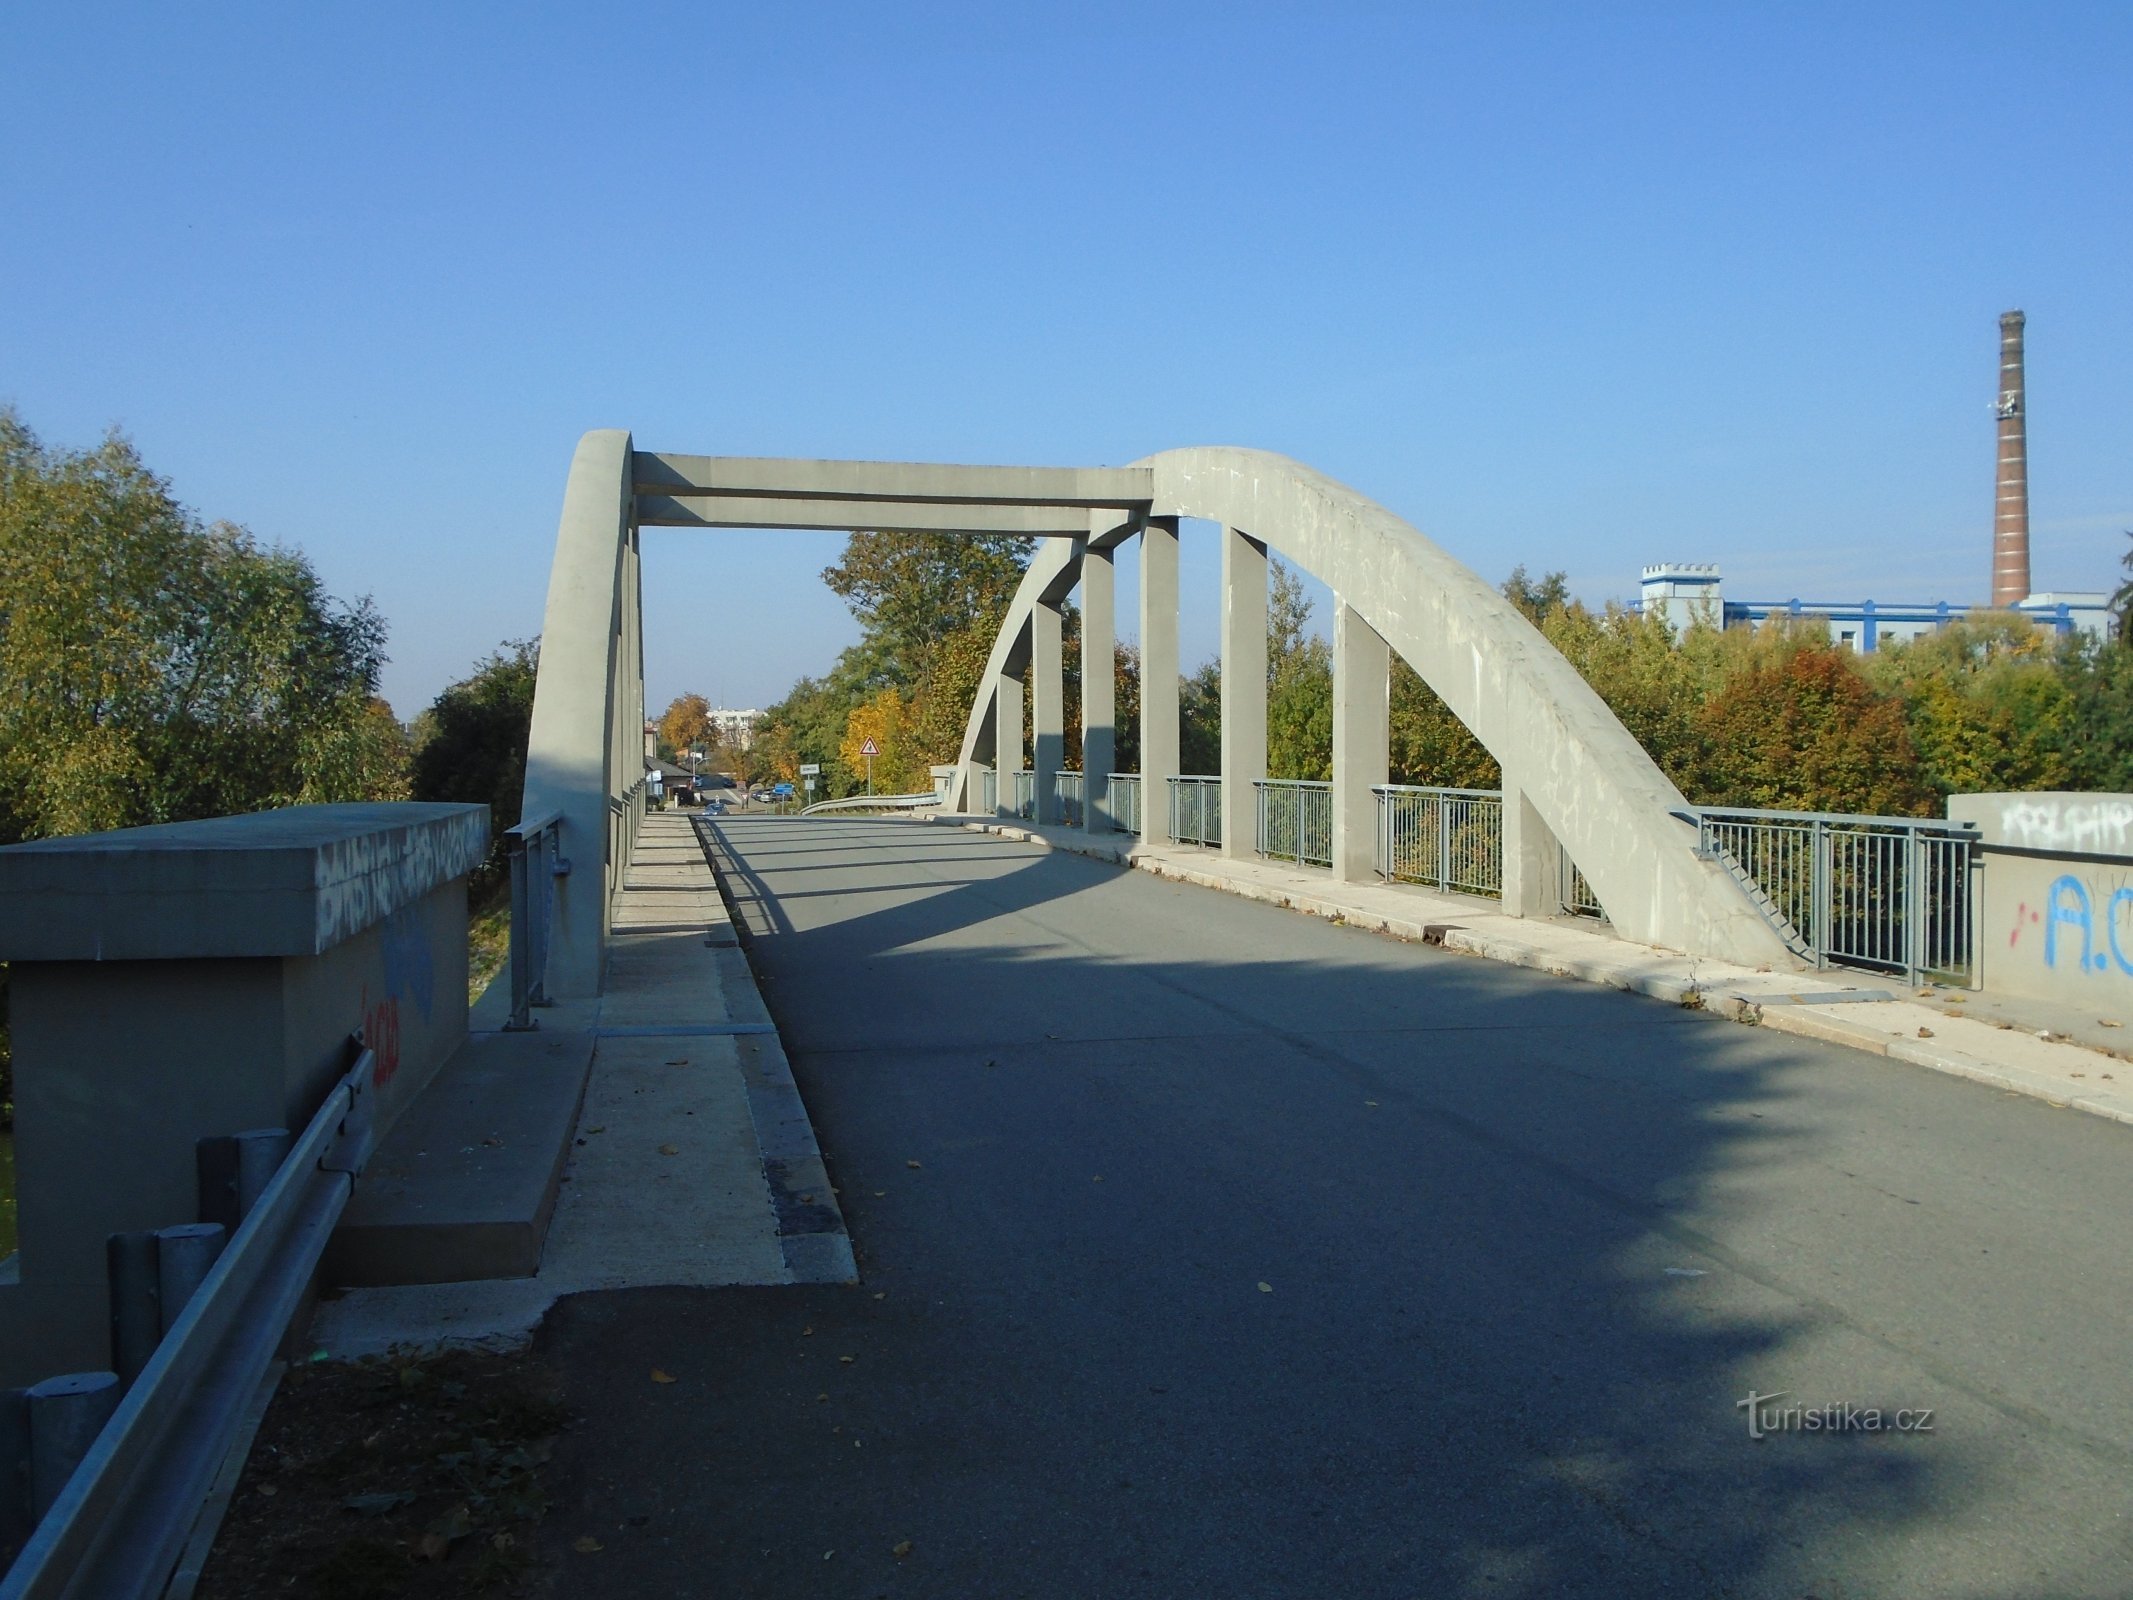 Η τρέχουσα γέφυρα πάνω από τον Έλβα (Černožice, 10.10.2018/XNUMX/XNUMX)